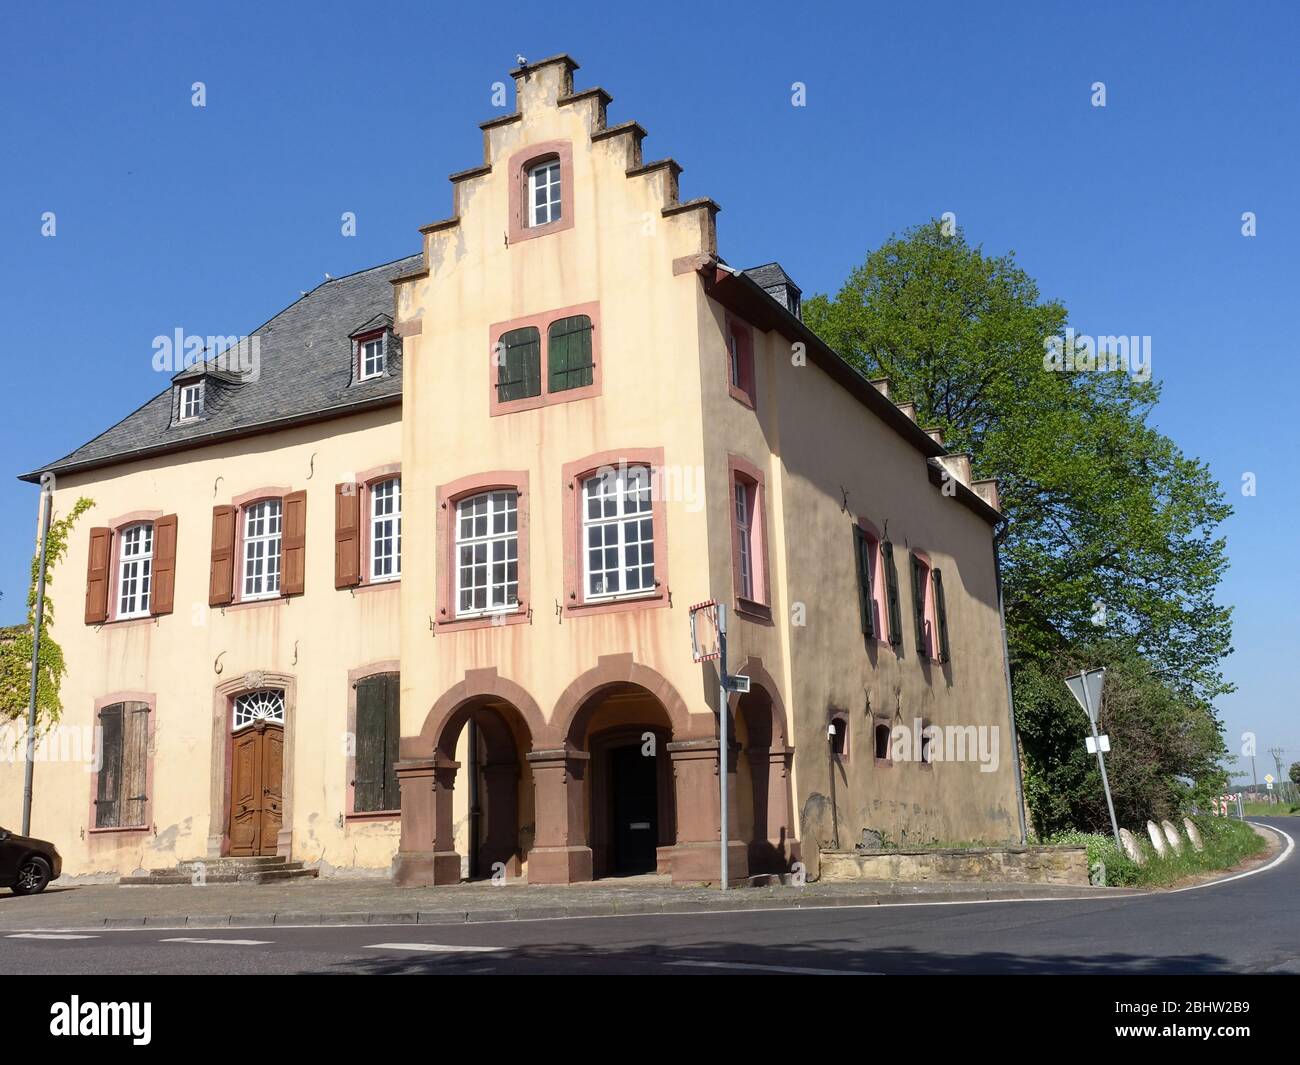 historisches Baudenkmal Wildenburg Buervenich, Zuelpich, Nordrhein-Westfalen, Allemagne Banque D'Images